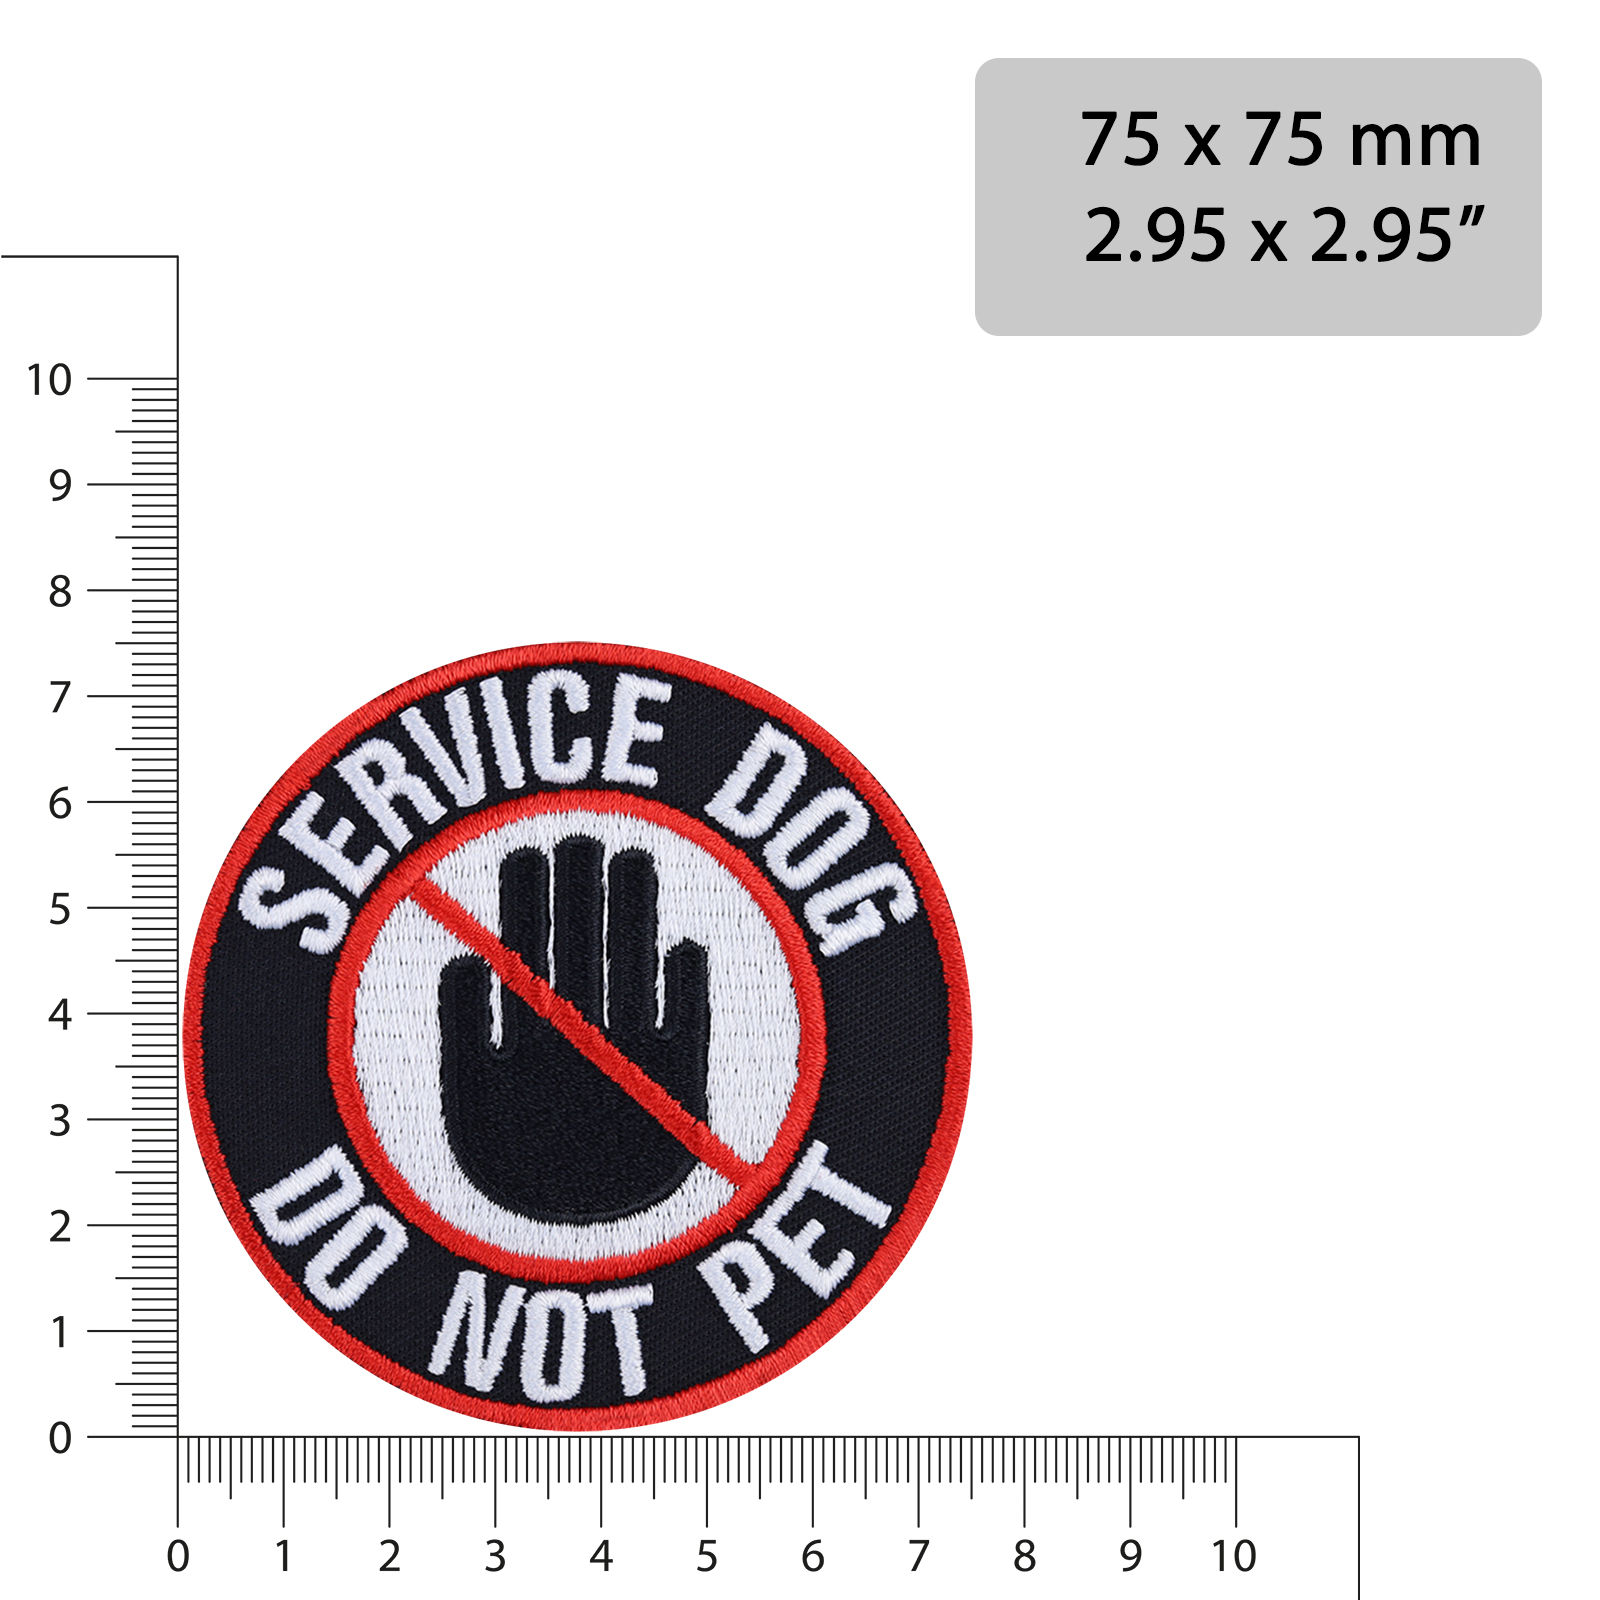 Service dog - Do not pet - Patch